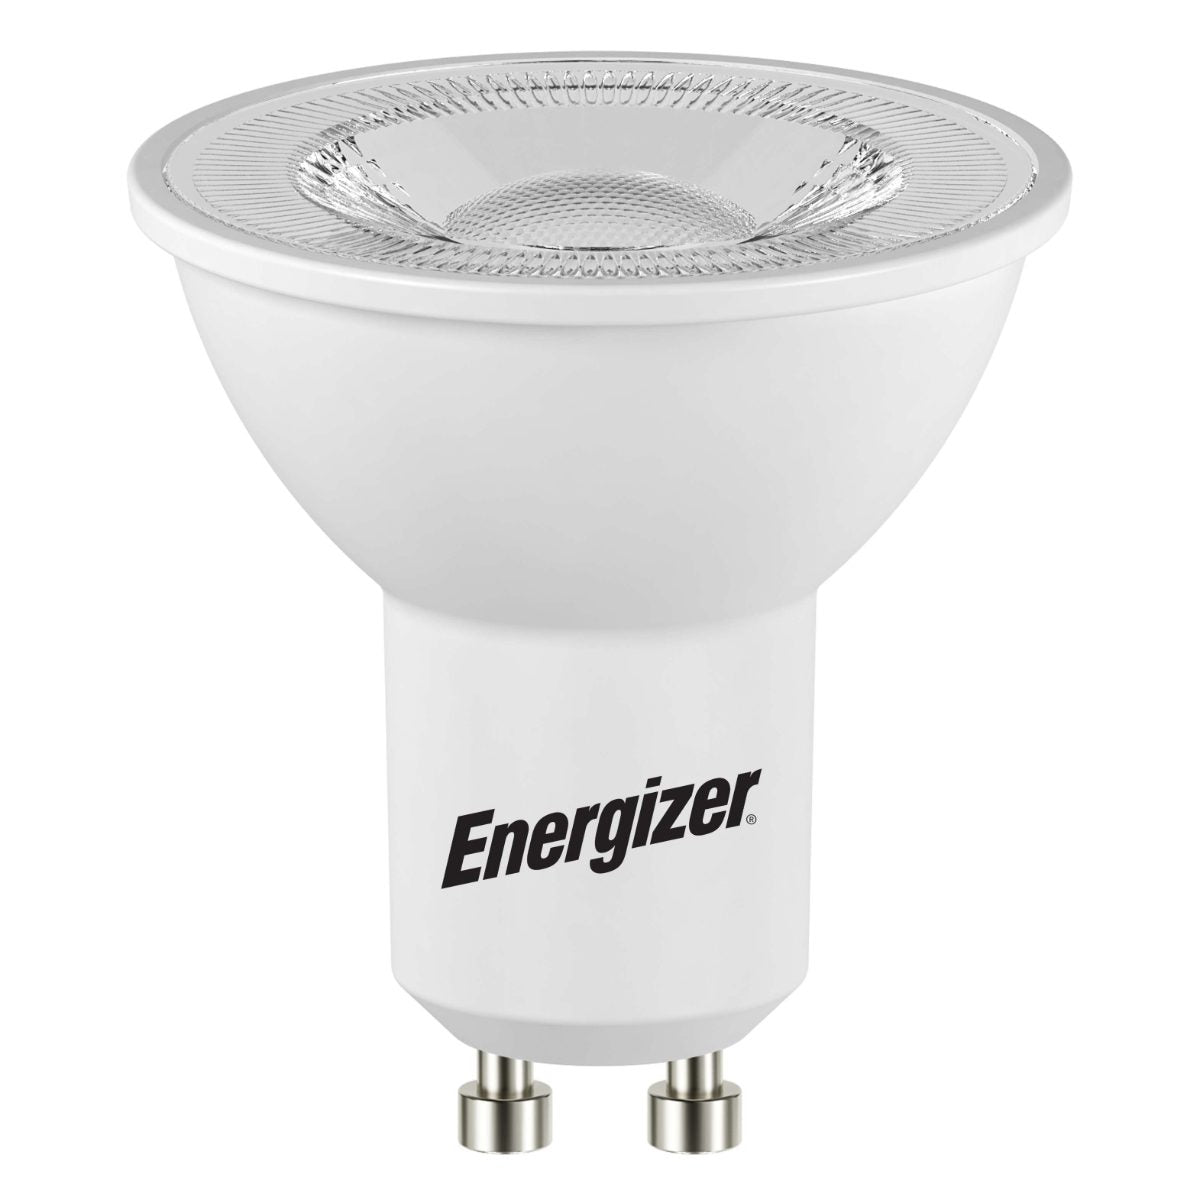 Energizer LED GU10, 345 Lumen, 3,6 W, 3.000 K (Warmweiß), dimmbar, Packung mit 1 Stück